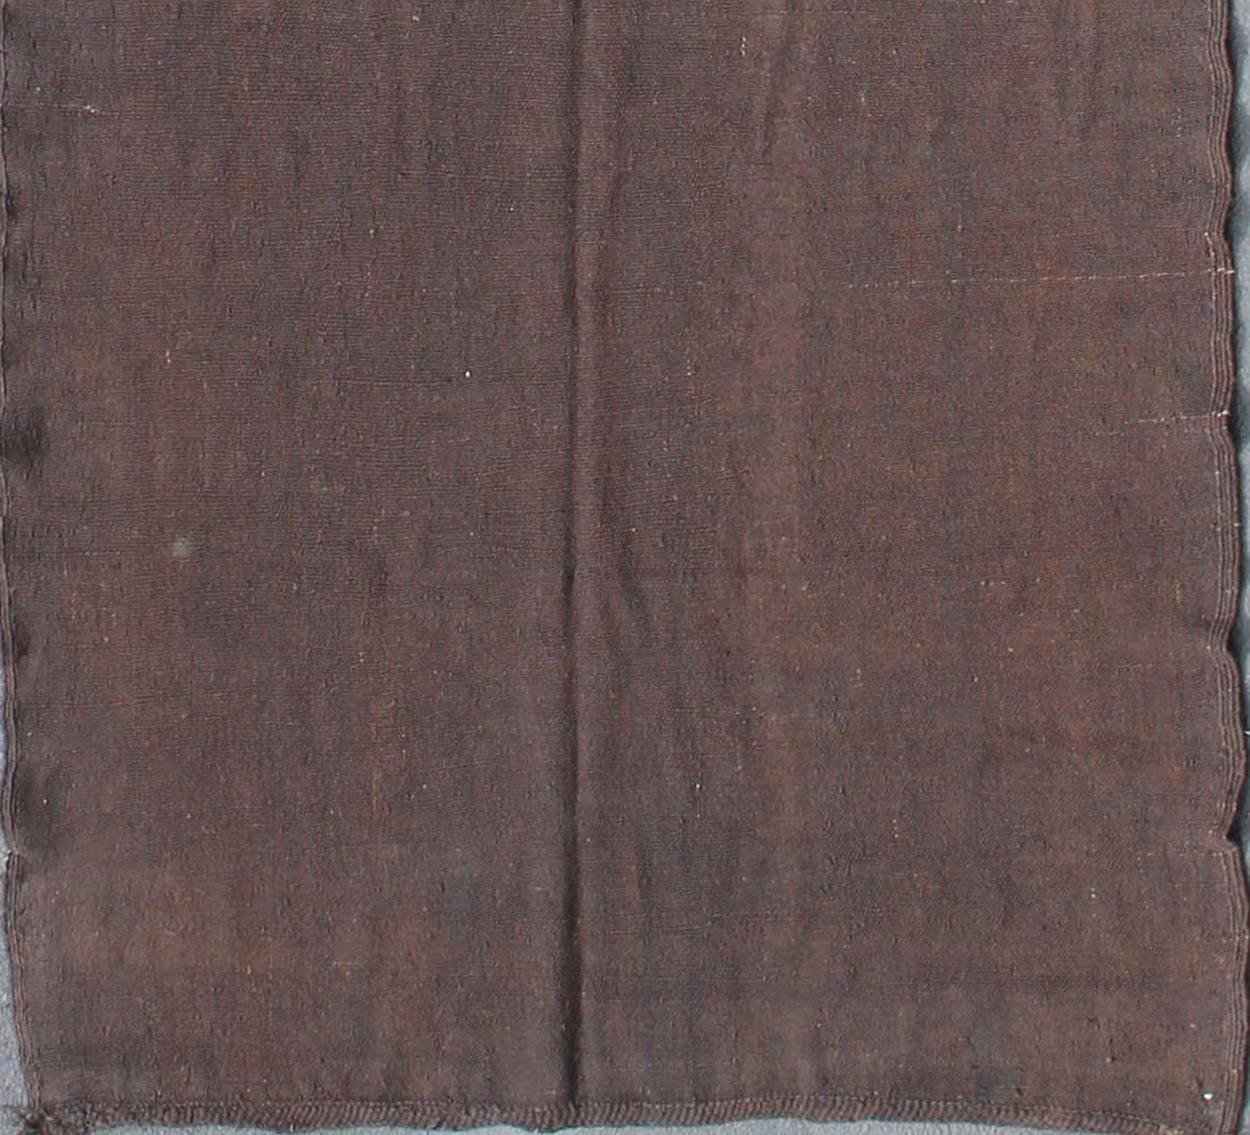 Marokkanischer Kilim-Läufer mit Fransendetails, Teppich 13-0402, Herkunftsland / Art: Marokko / Marokkanisch, etwa Mitte des 20. Jahrhunderts.

Maße: 6'1 x 20'4.

Dieser marokkanische Stammesläufer im Vintage-Stil aus den 1950er Jahren zeigt ein